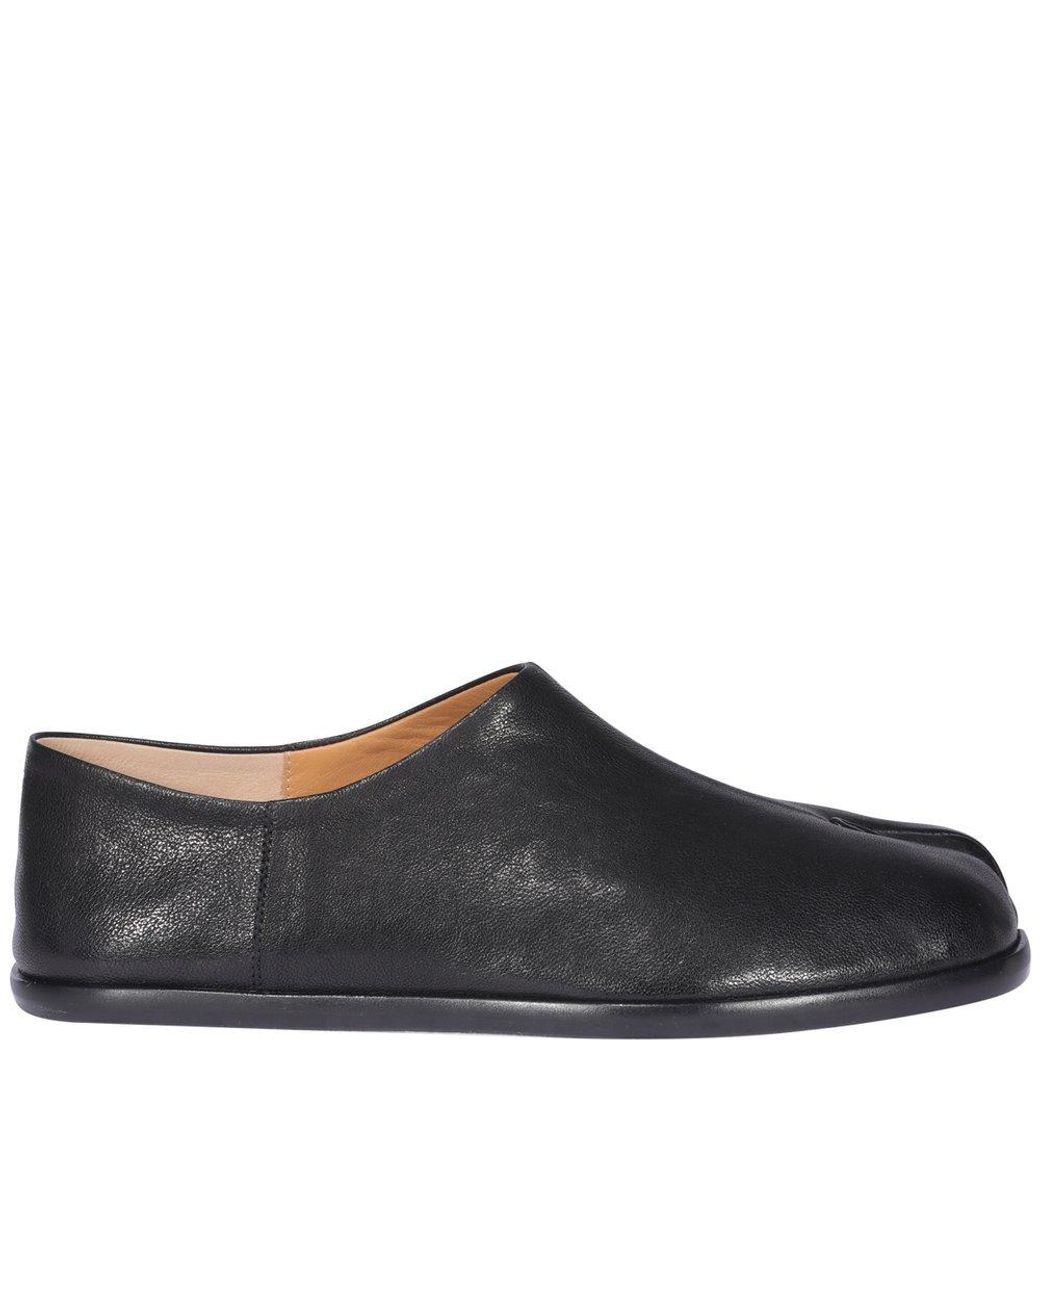 Maison Margiela Tabi Slip-on Loafers in Black | Lyst